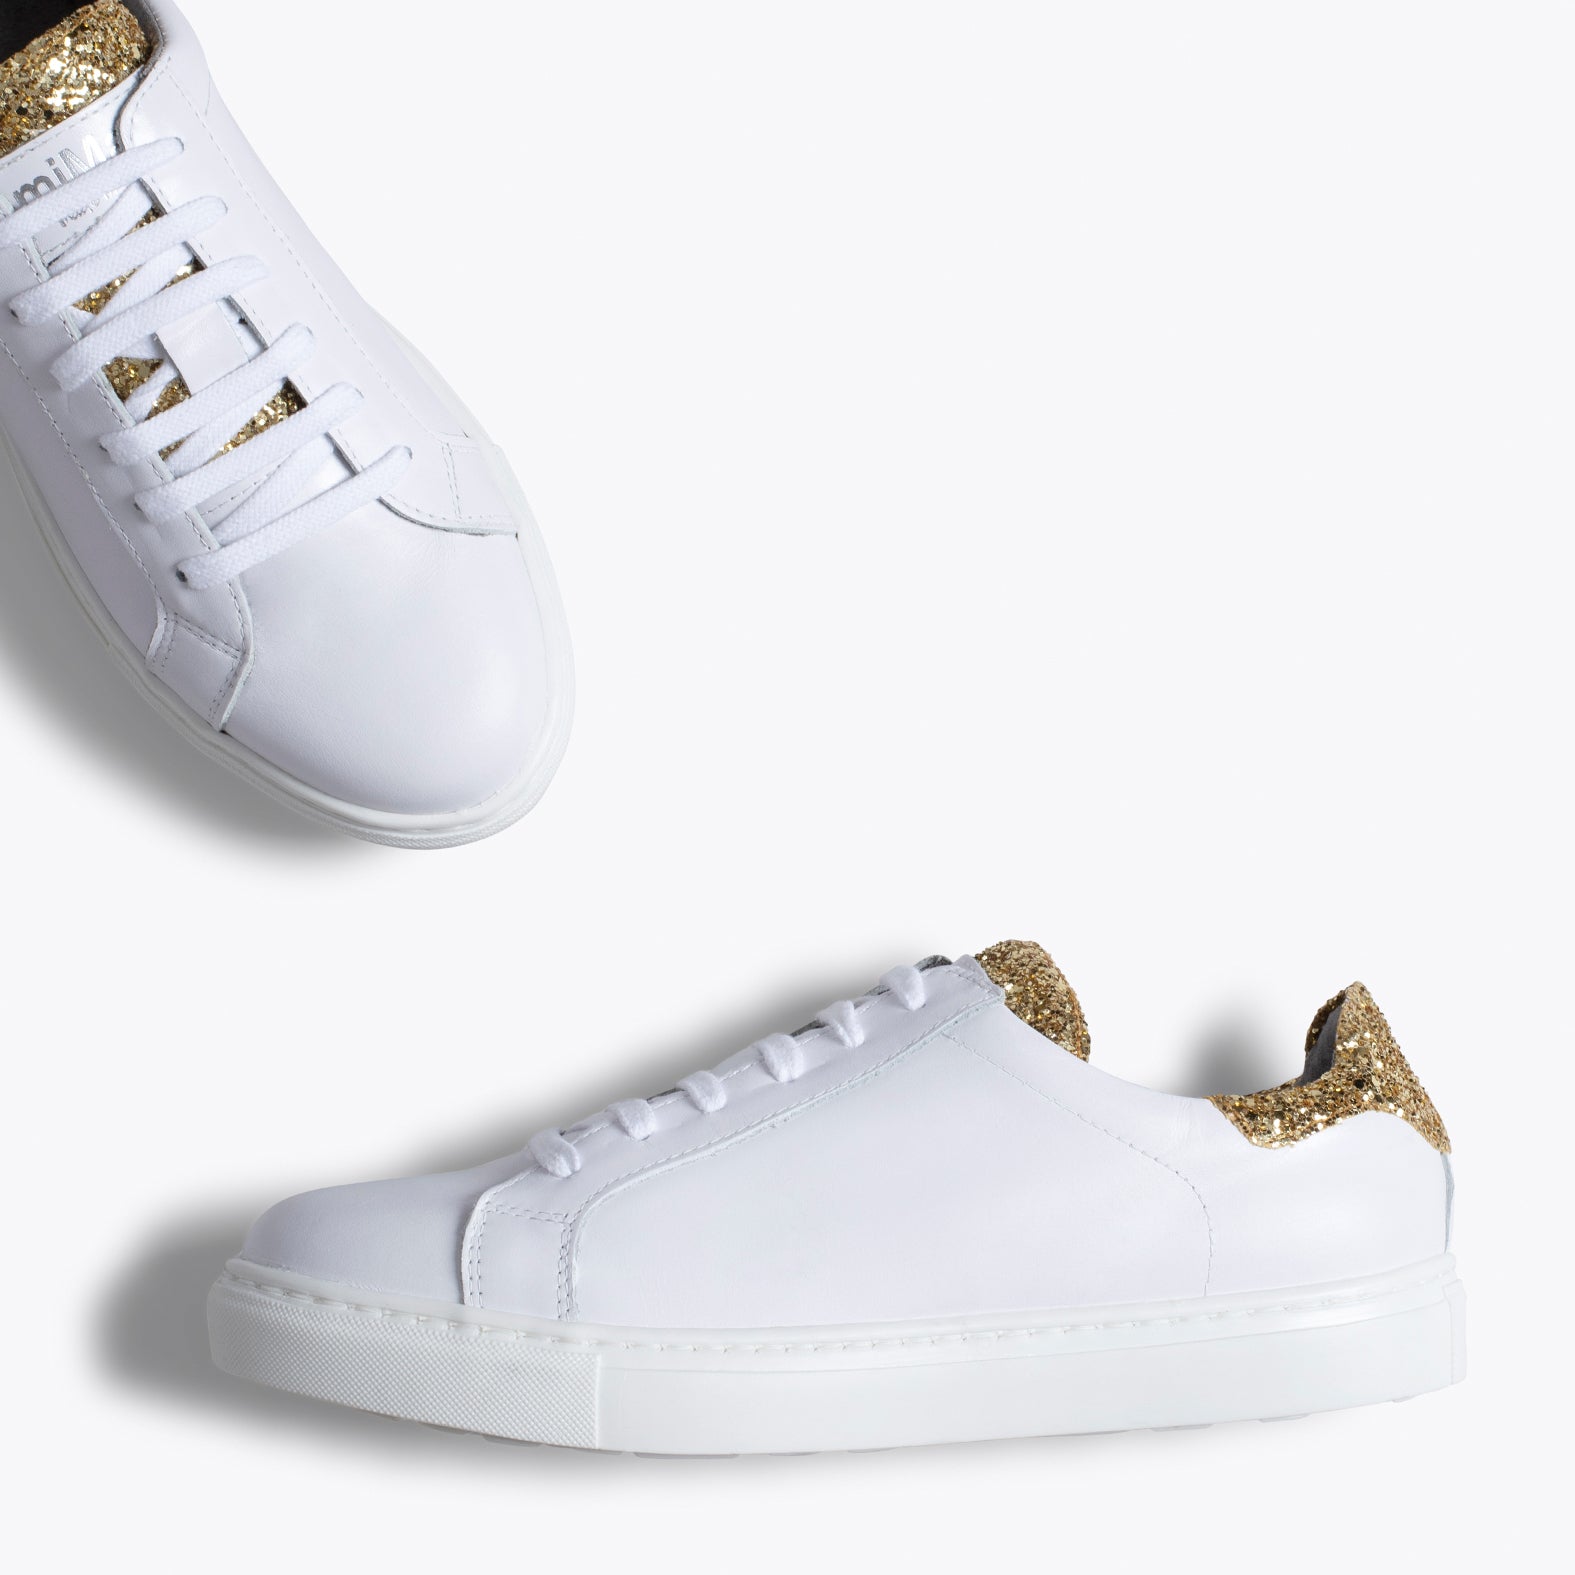 SNEAKER – GOLD GLITTER timeless sneaker